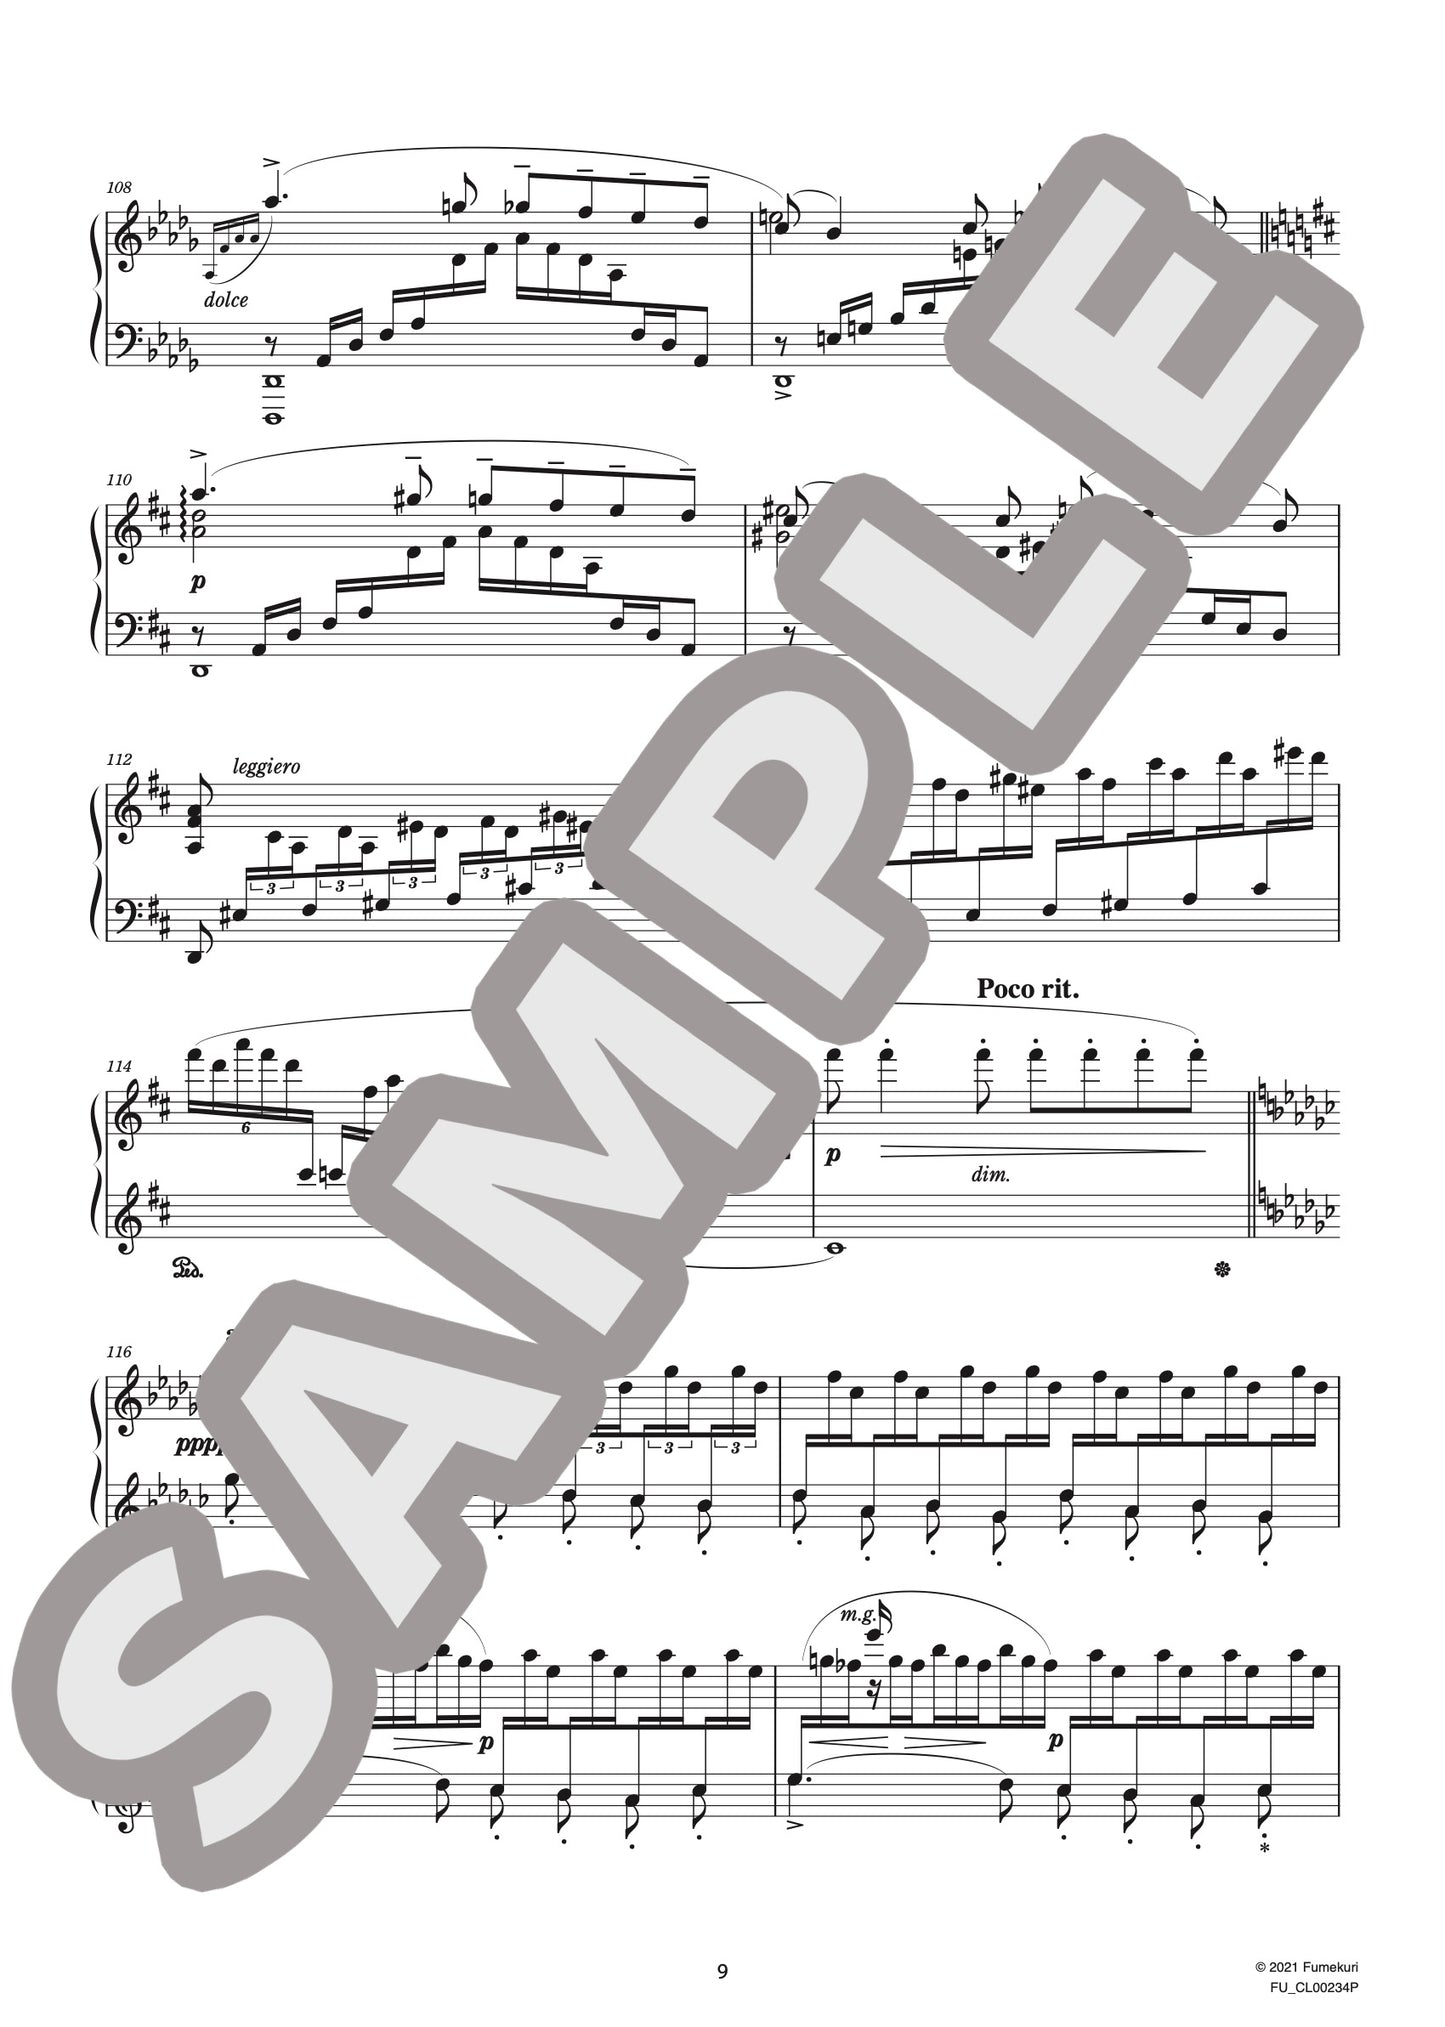 6つの演奏会用練習曲 第2集 ロマンティク 作品132（CHAMINADE) / クラシック・オリジナル楽曲【中上級】